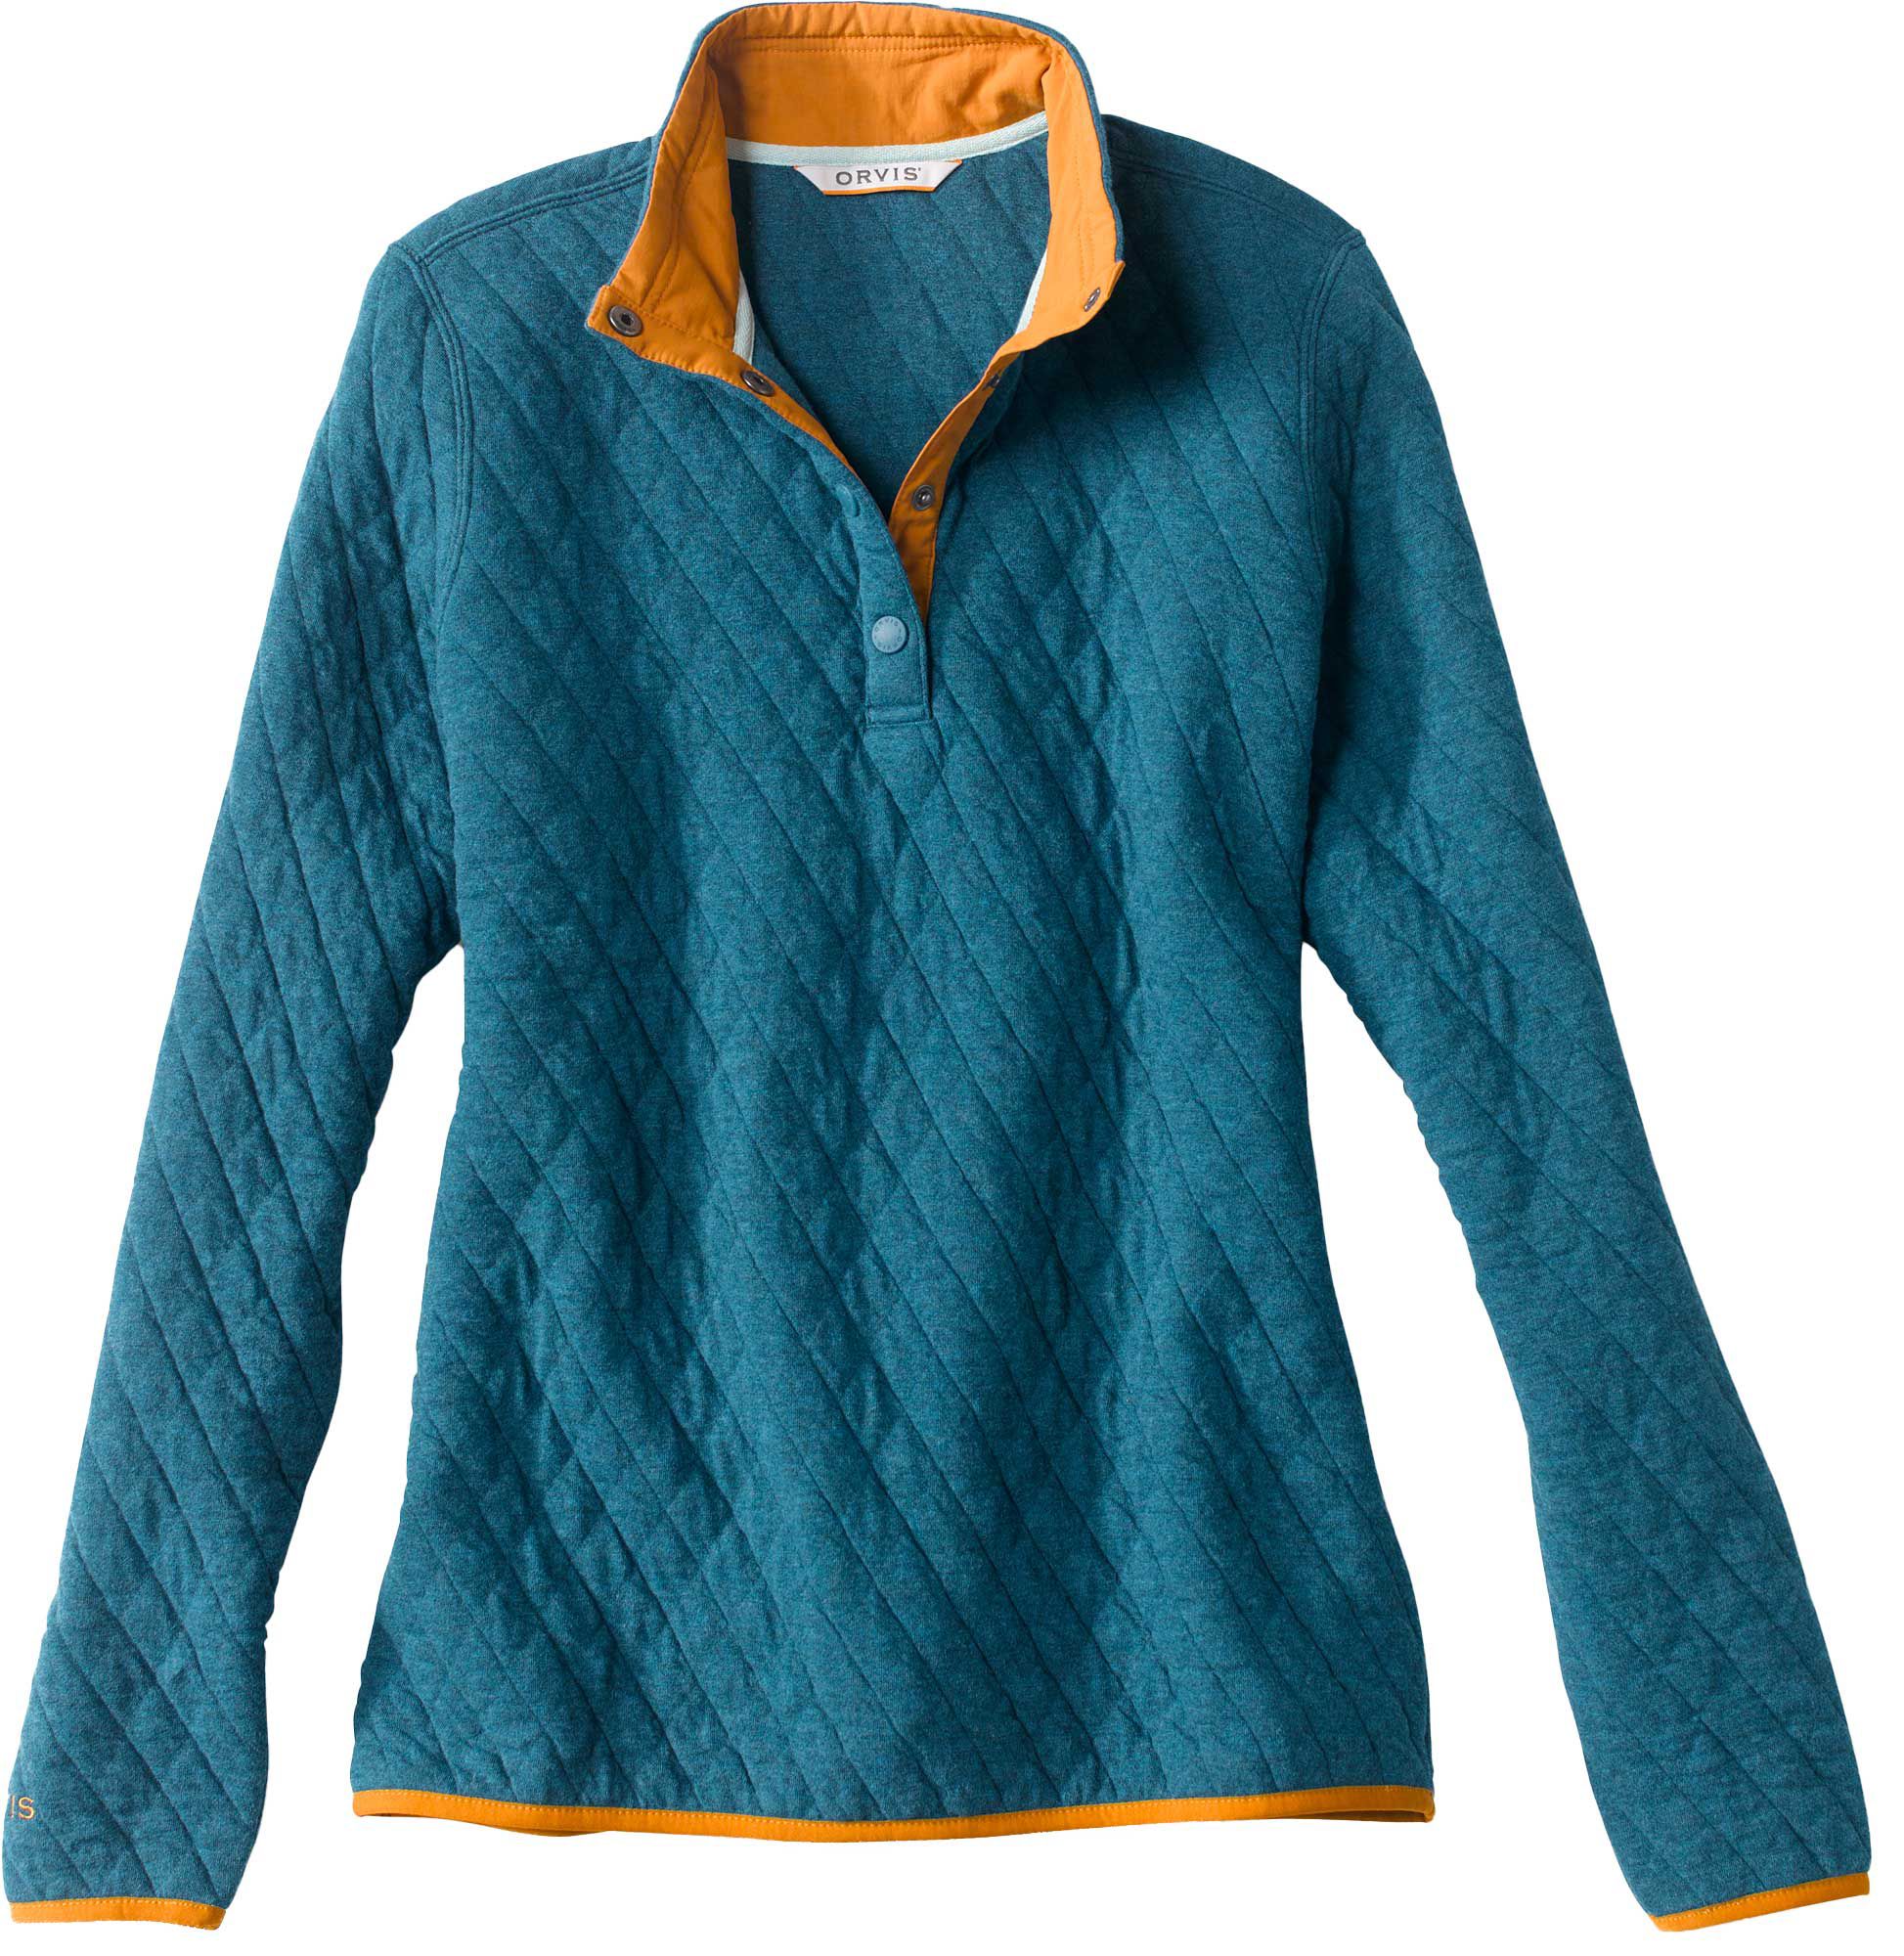 Dick's Sporting Goods Orvis Women's Outdoor Quilted Snap Sweatshirt